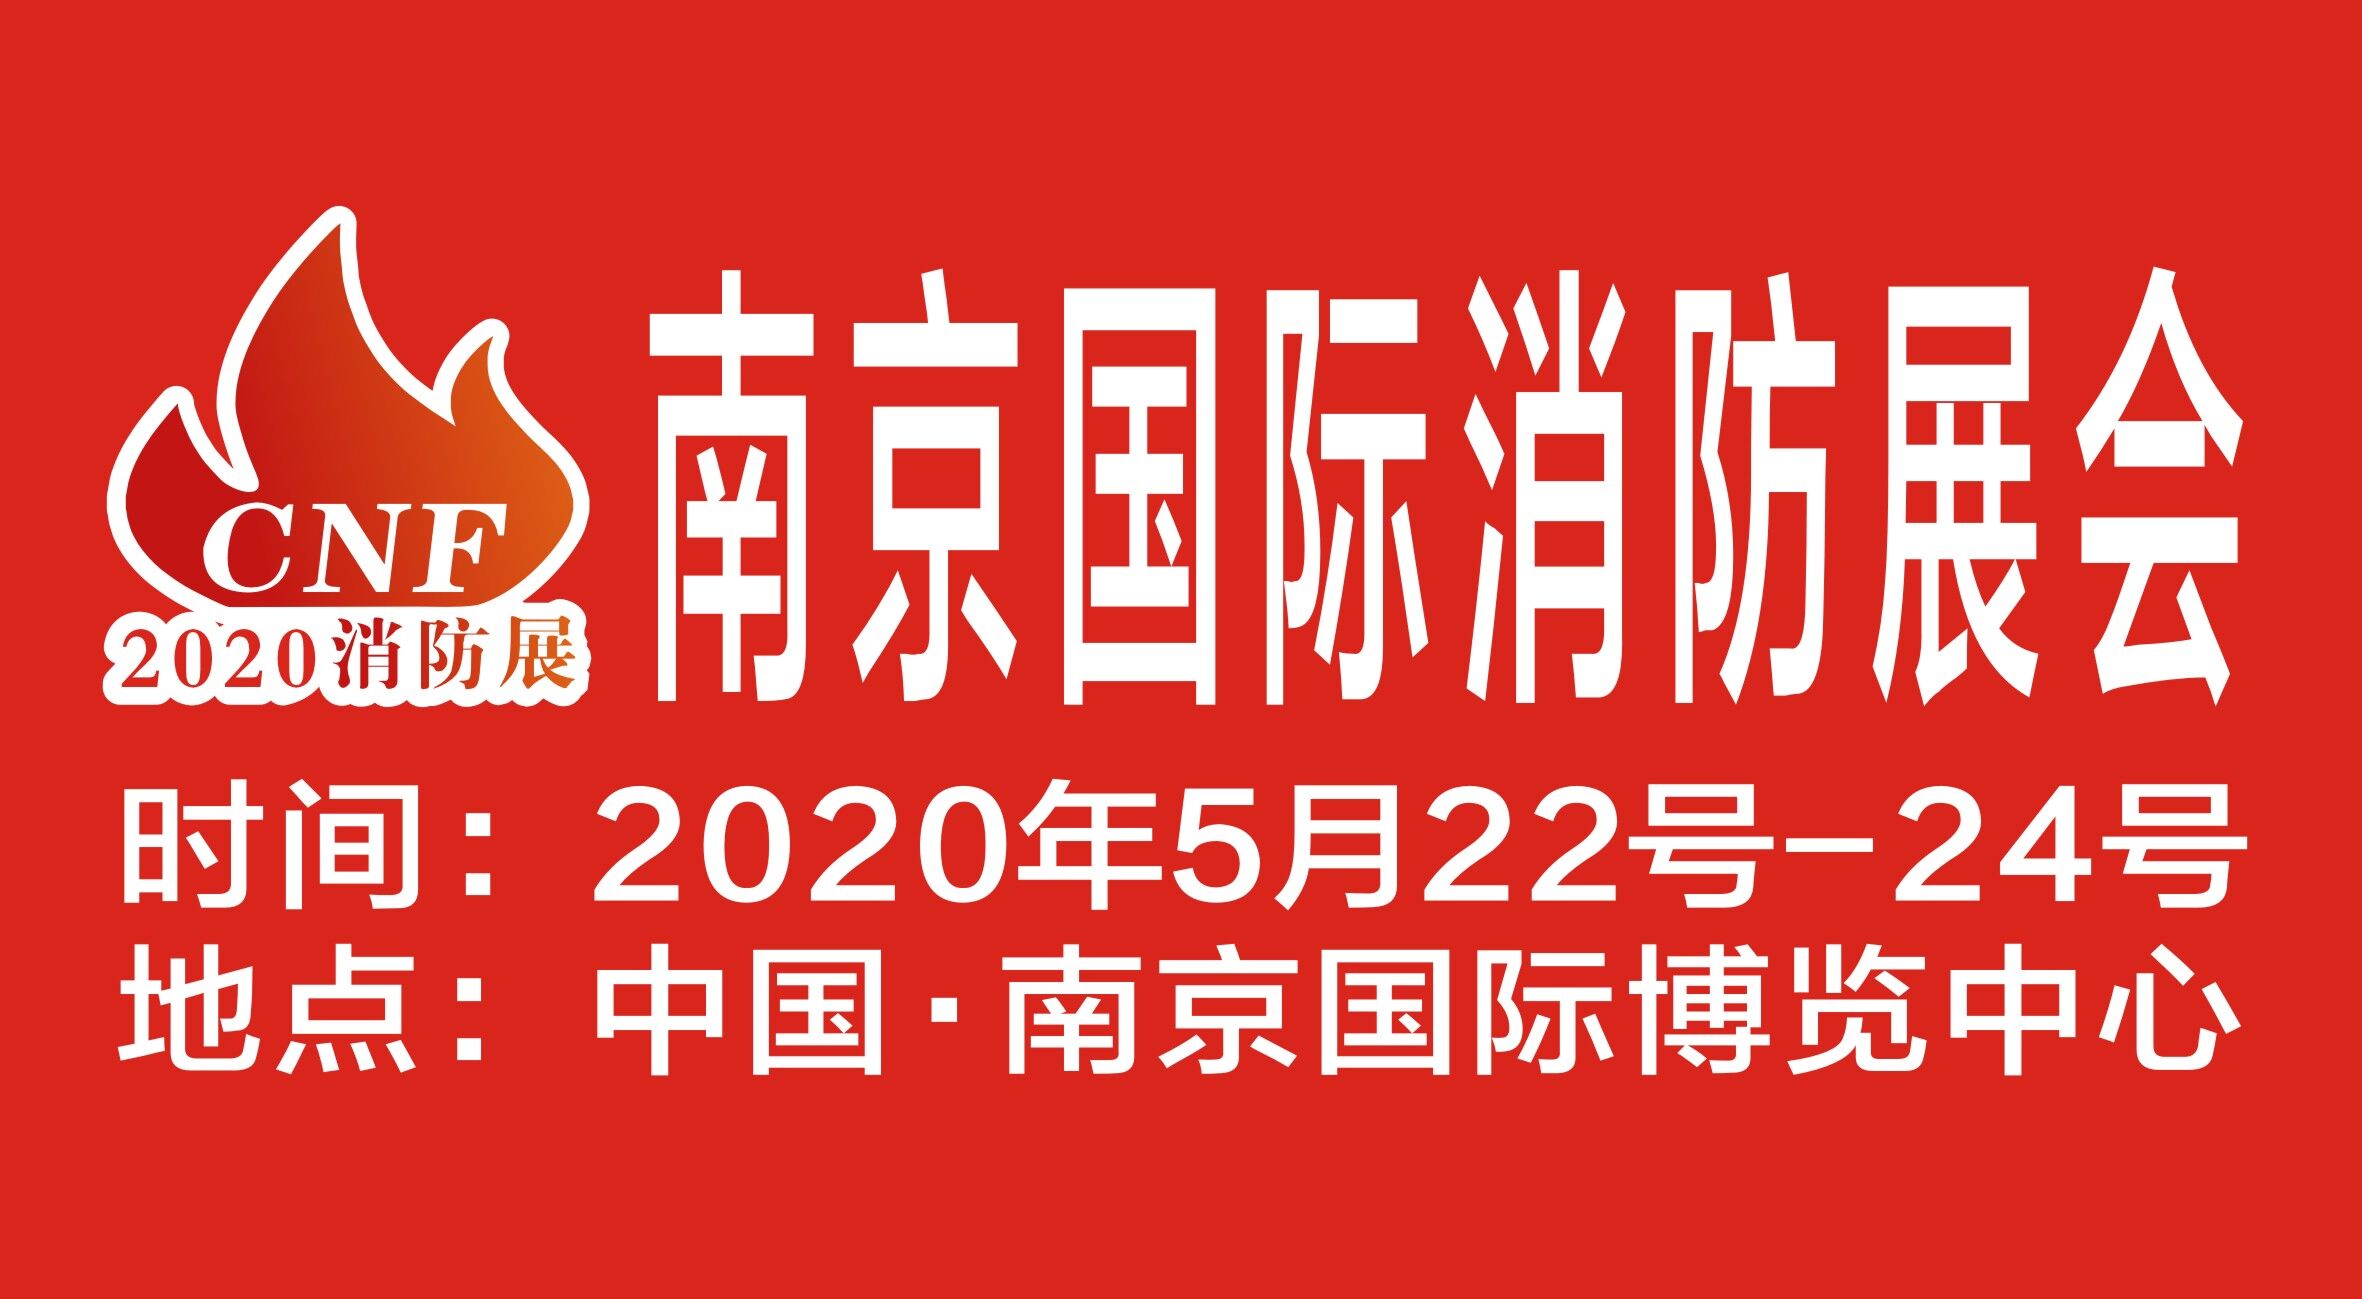 2020年江苏南京消防展丨关注火场逃生法则